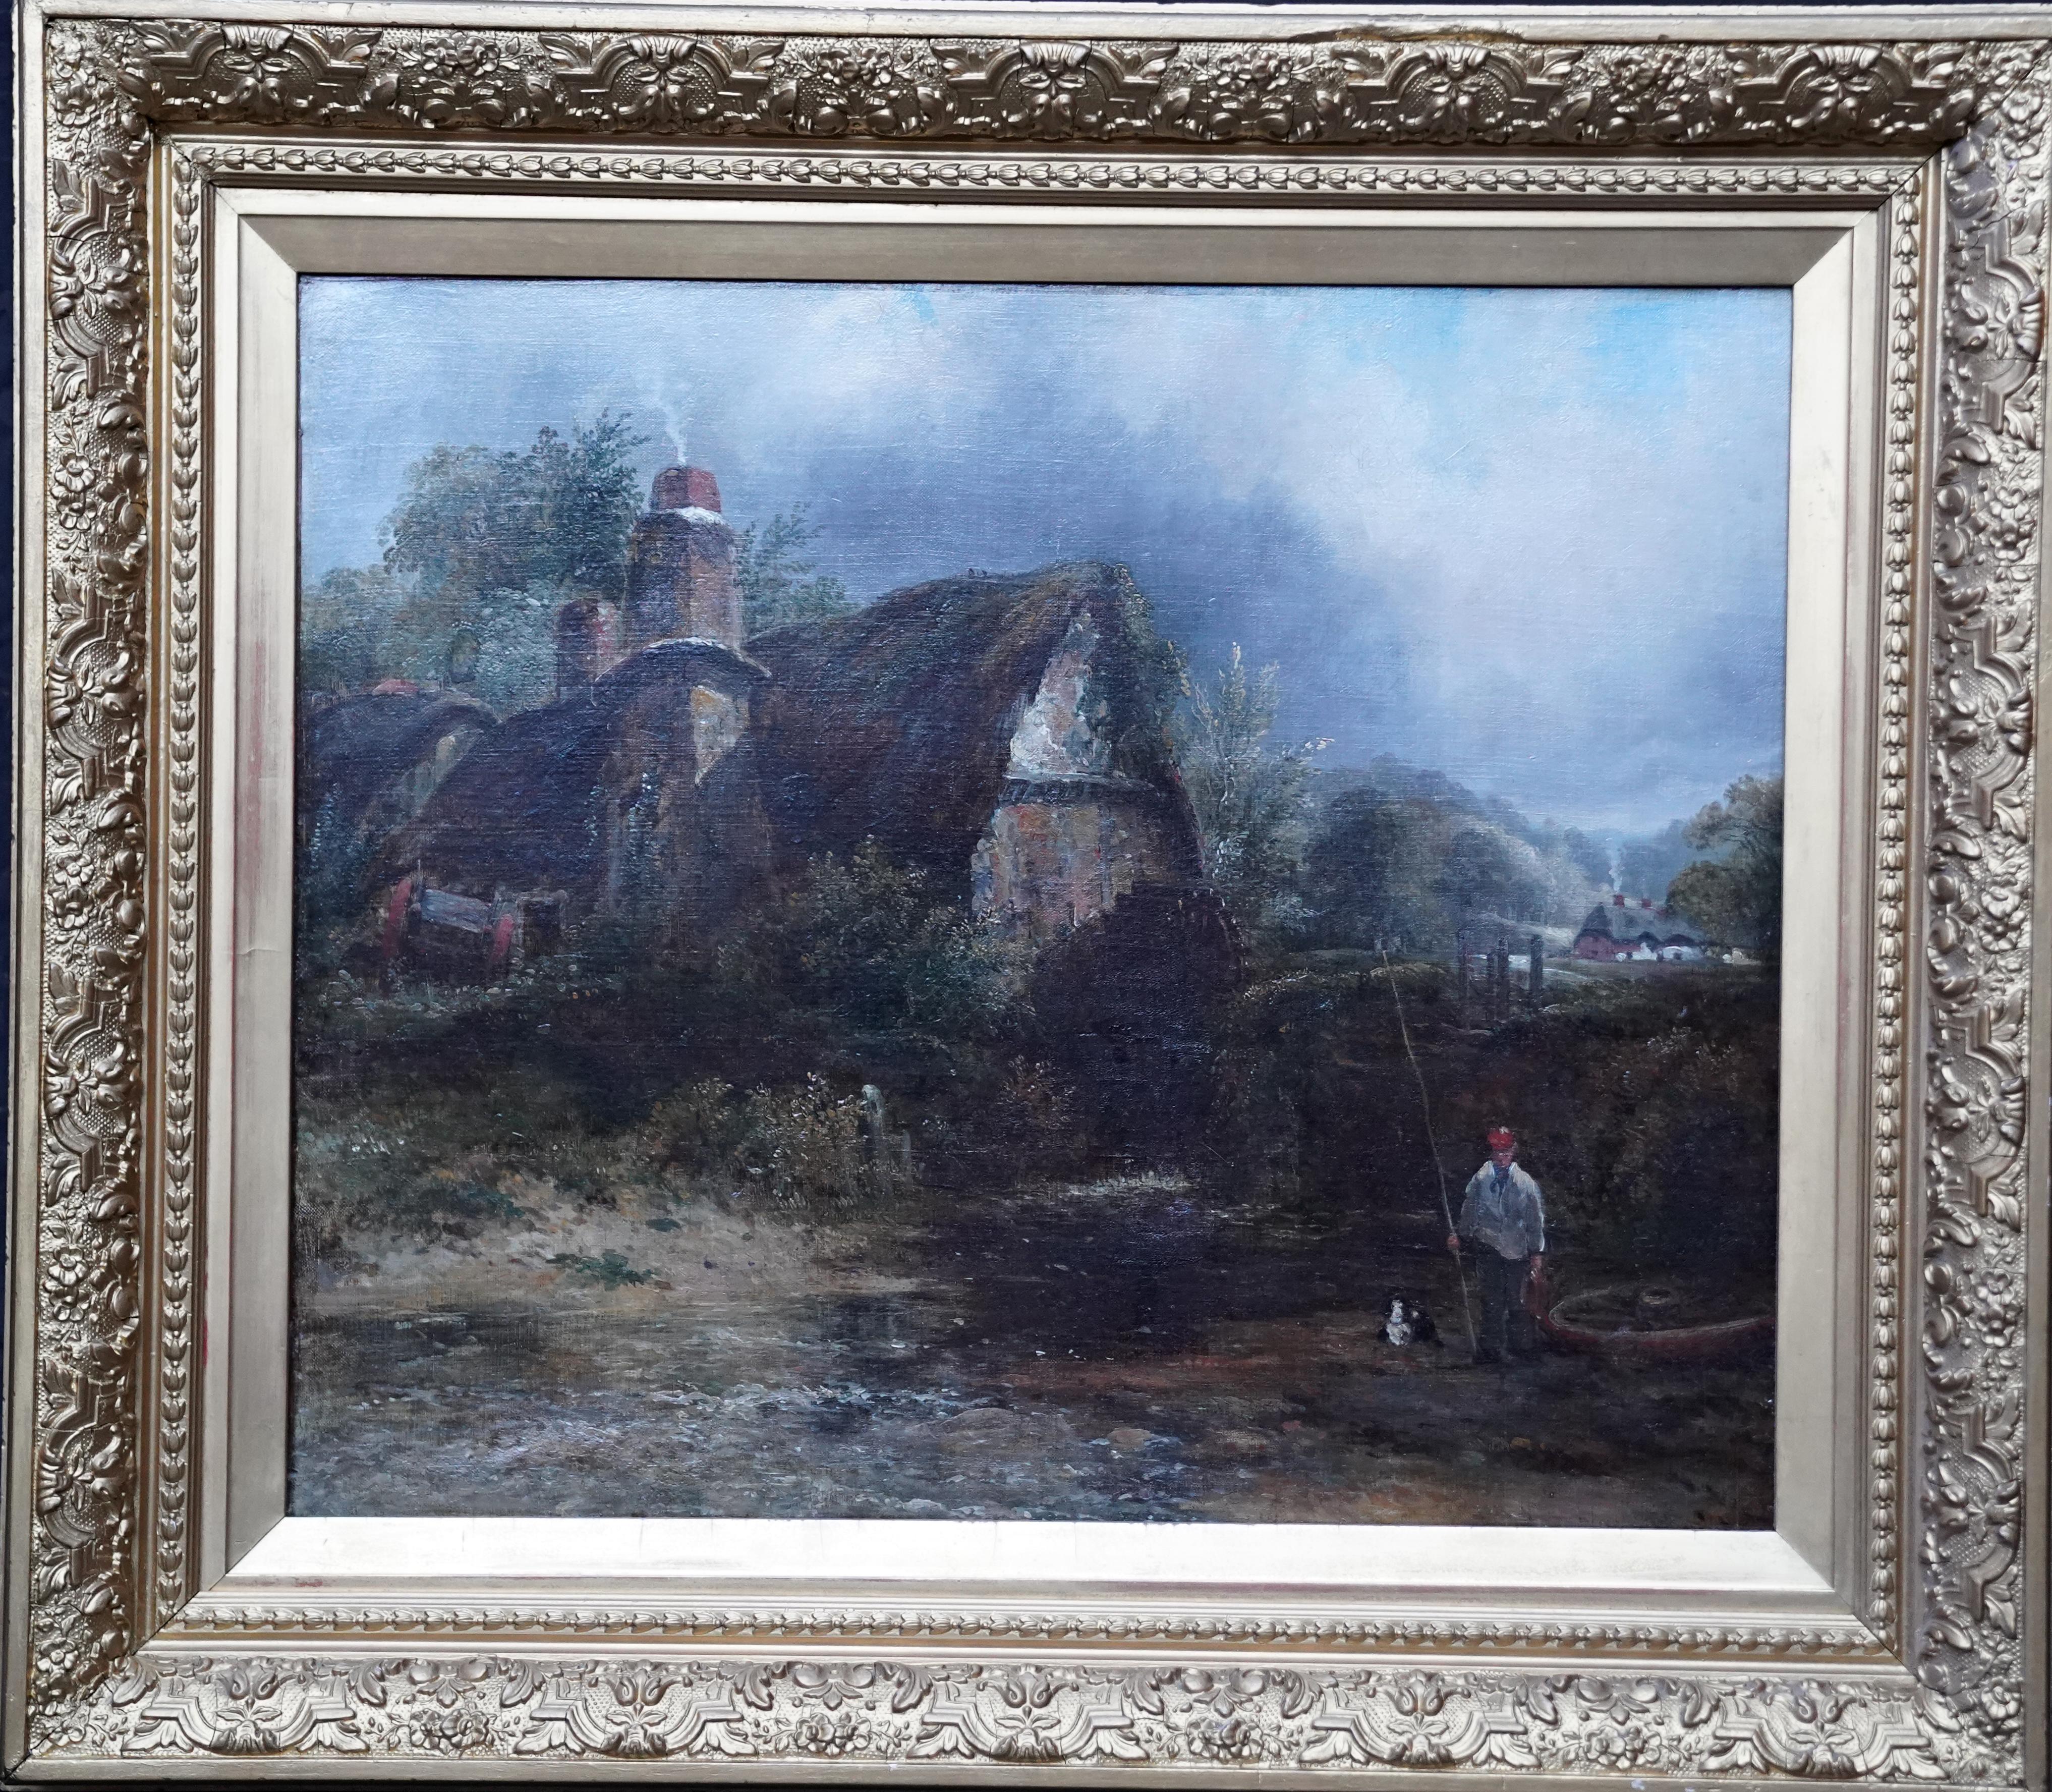 Landscape Painting Frederick Waters Watts - Moulin à eau de Dedham - Peinture à l'huile d'art britannique du 19e siècle - Paysage de Constable 